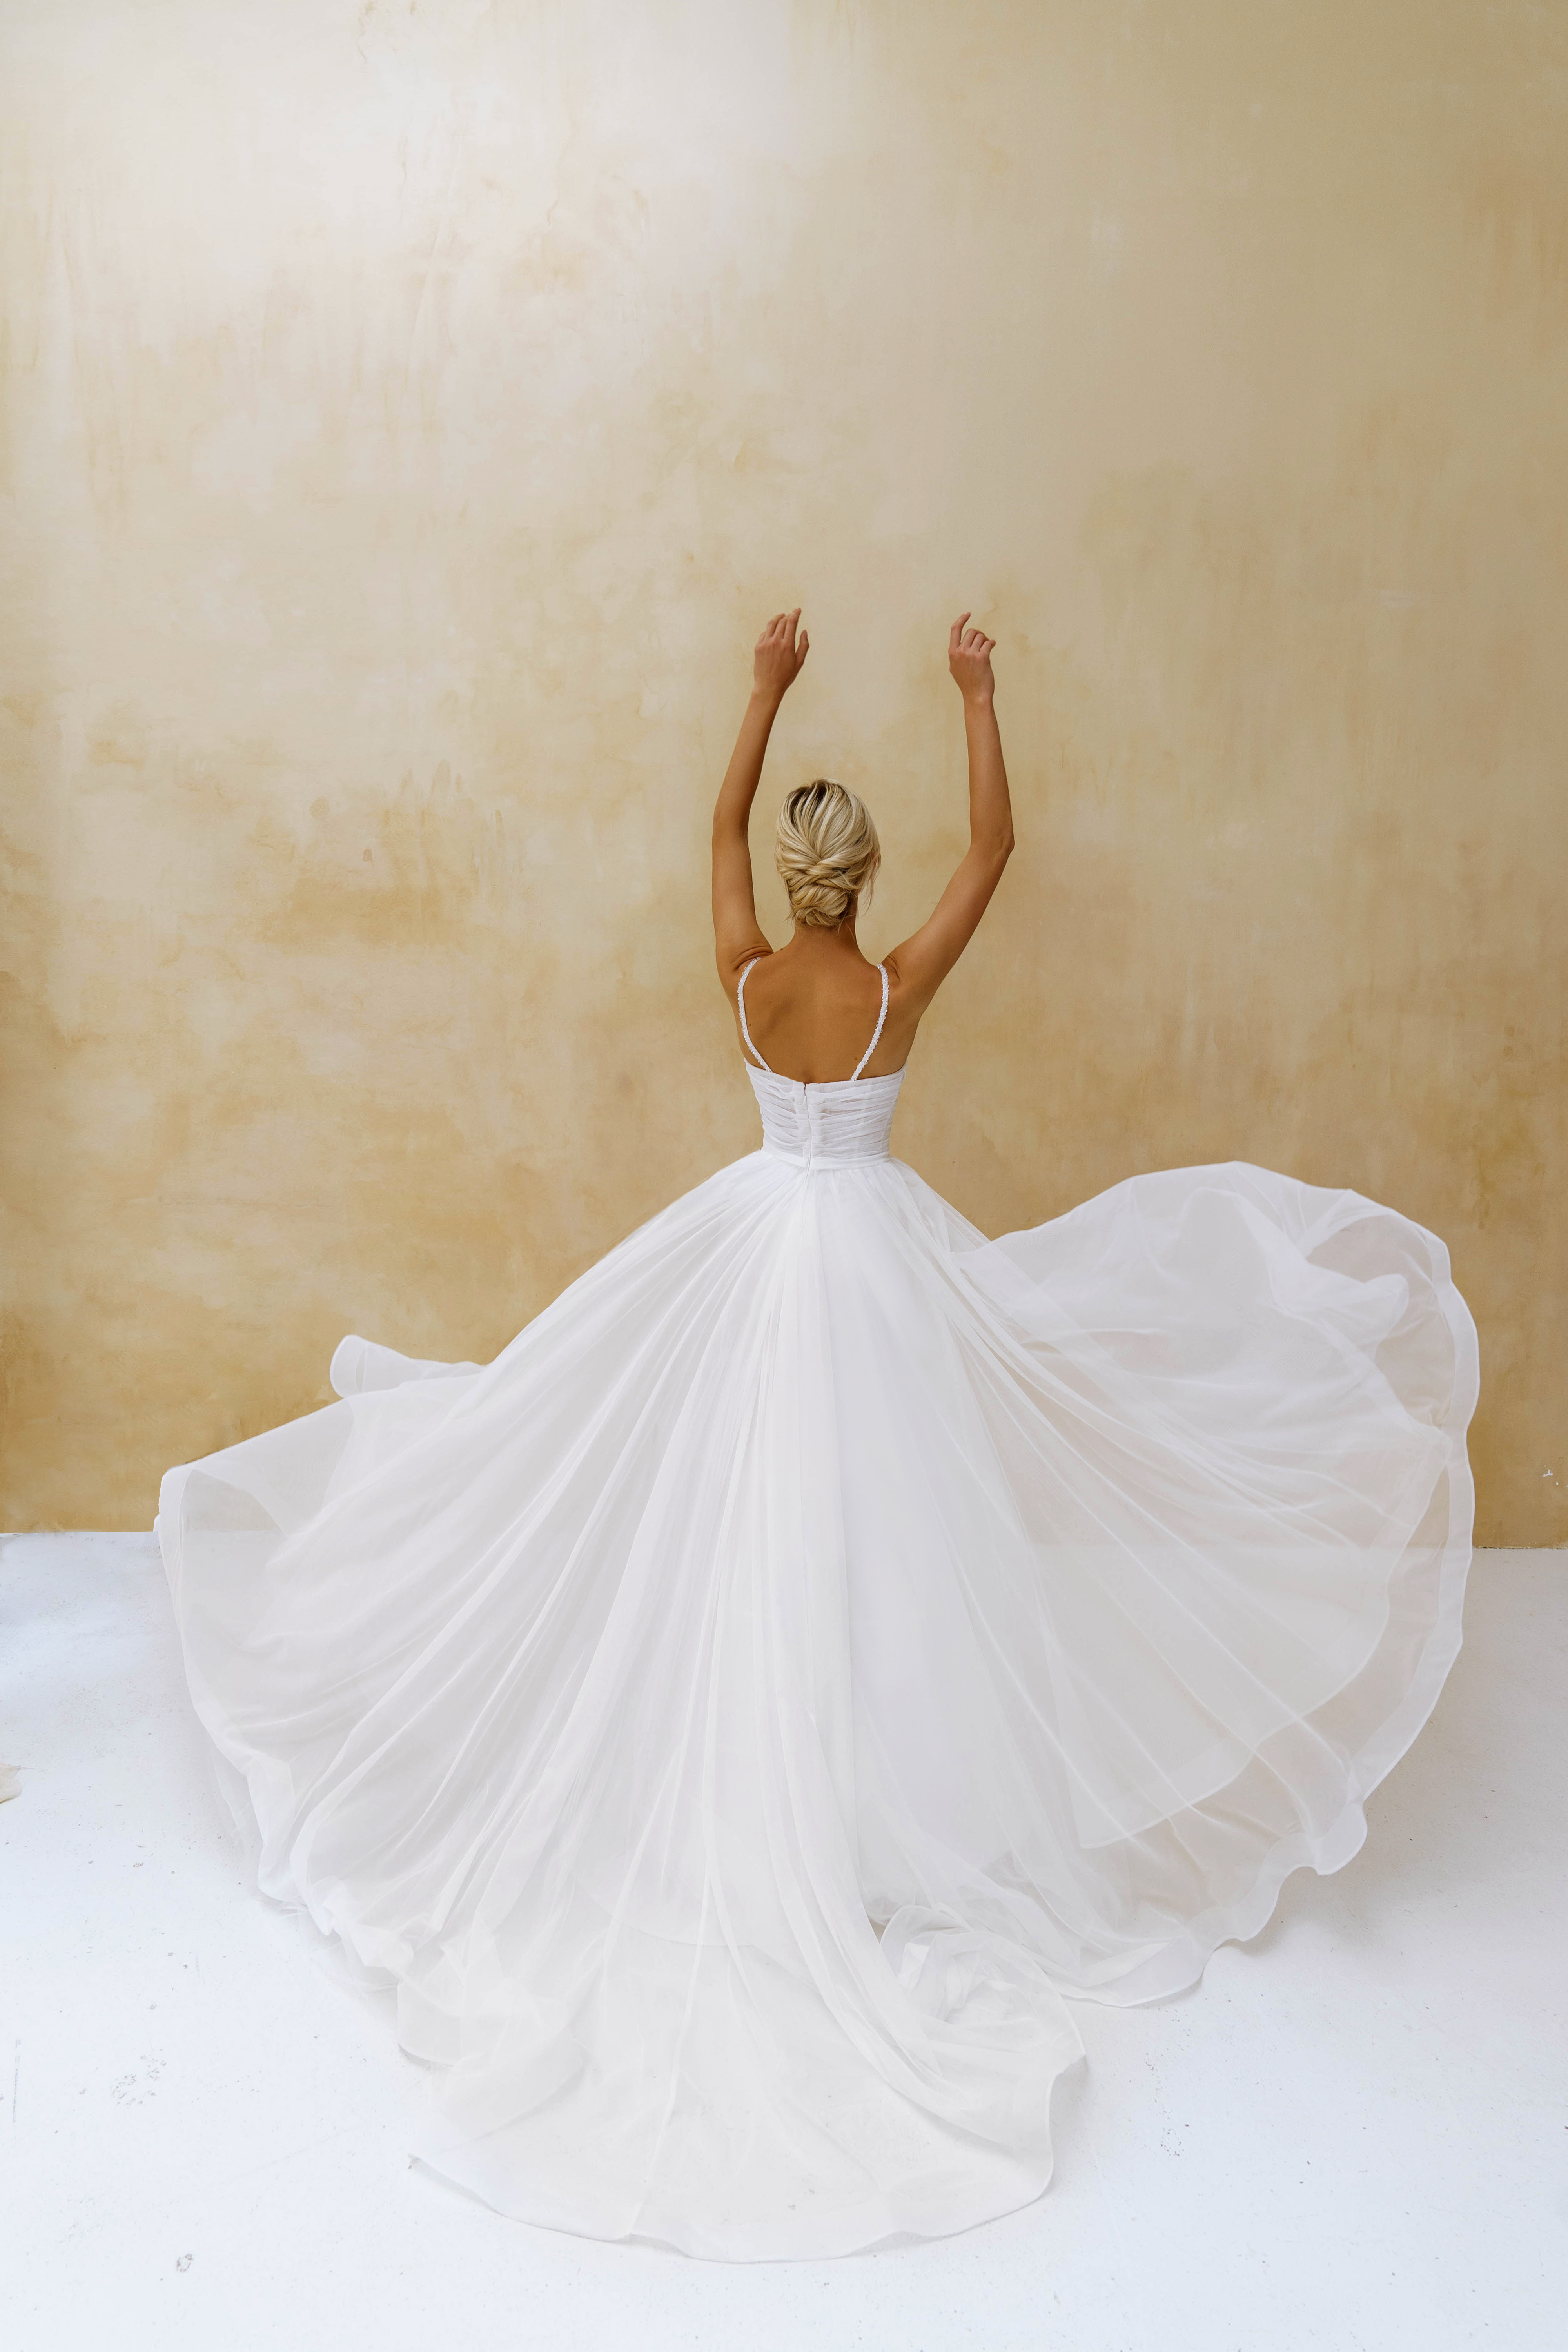 Купить свадебное платье «Рене» Наталья Романова из коллекции Блаш Бриз 2022 года в салоне «Мэри Трюфель»